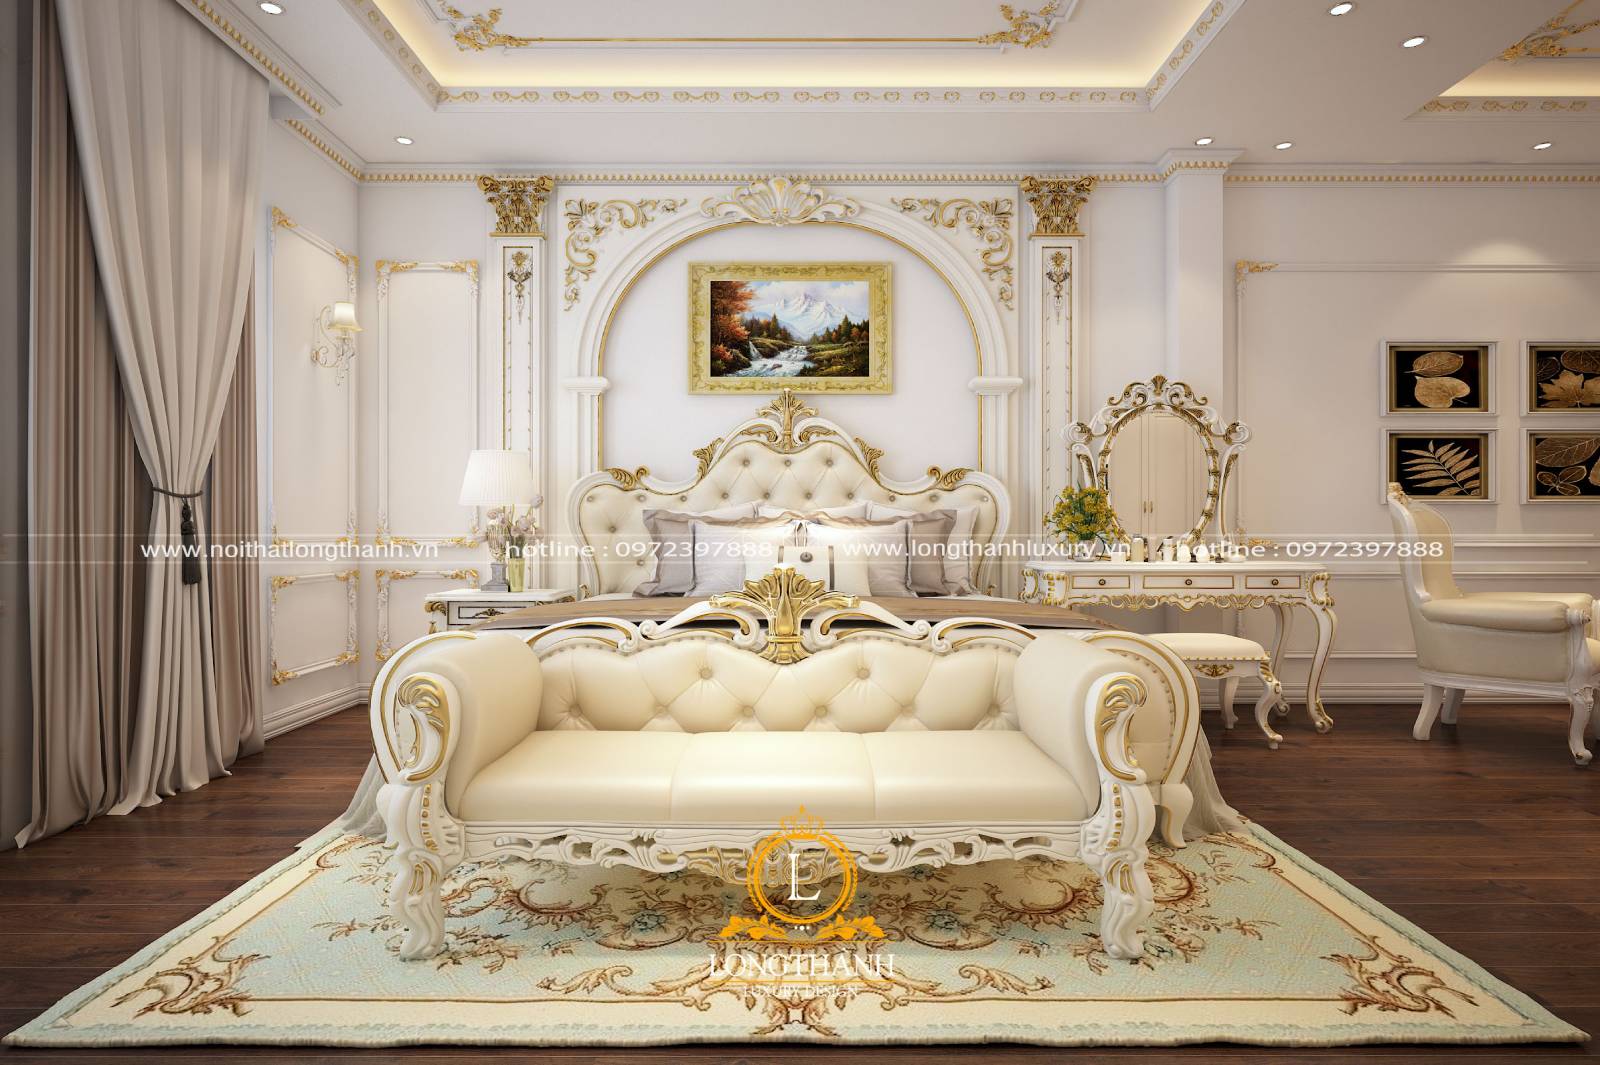 Thiết kế giường ngủ cao cấp cho nhà biệt thự rộng phong cách tân cổ điển